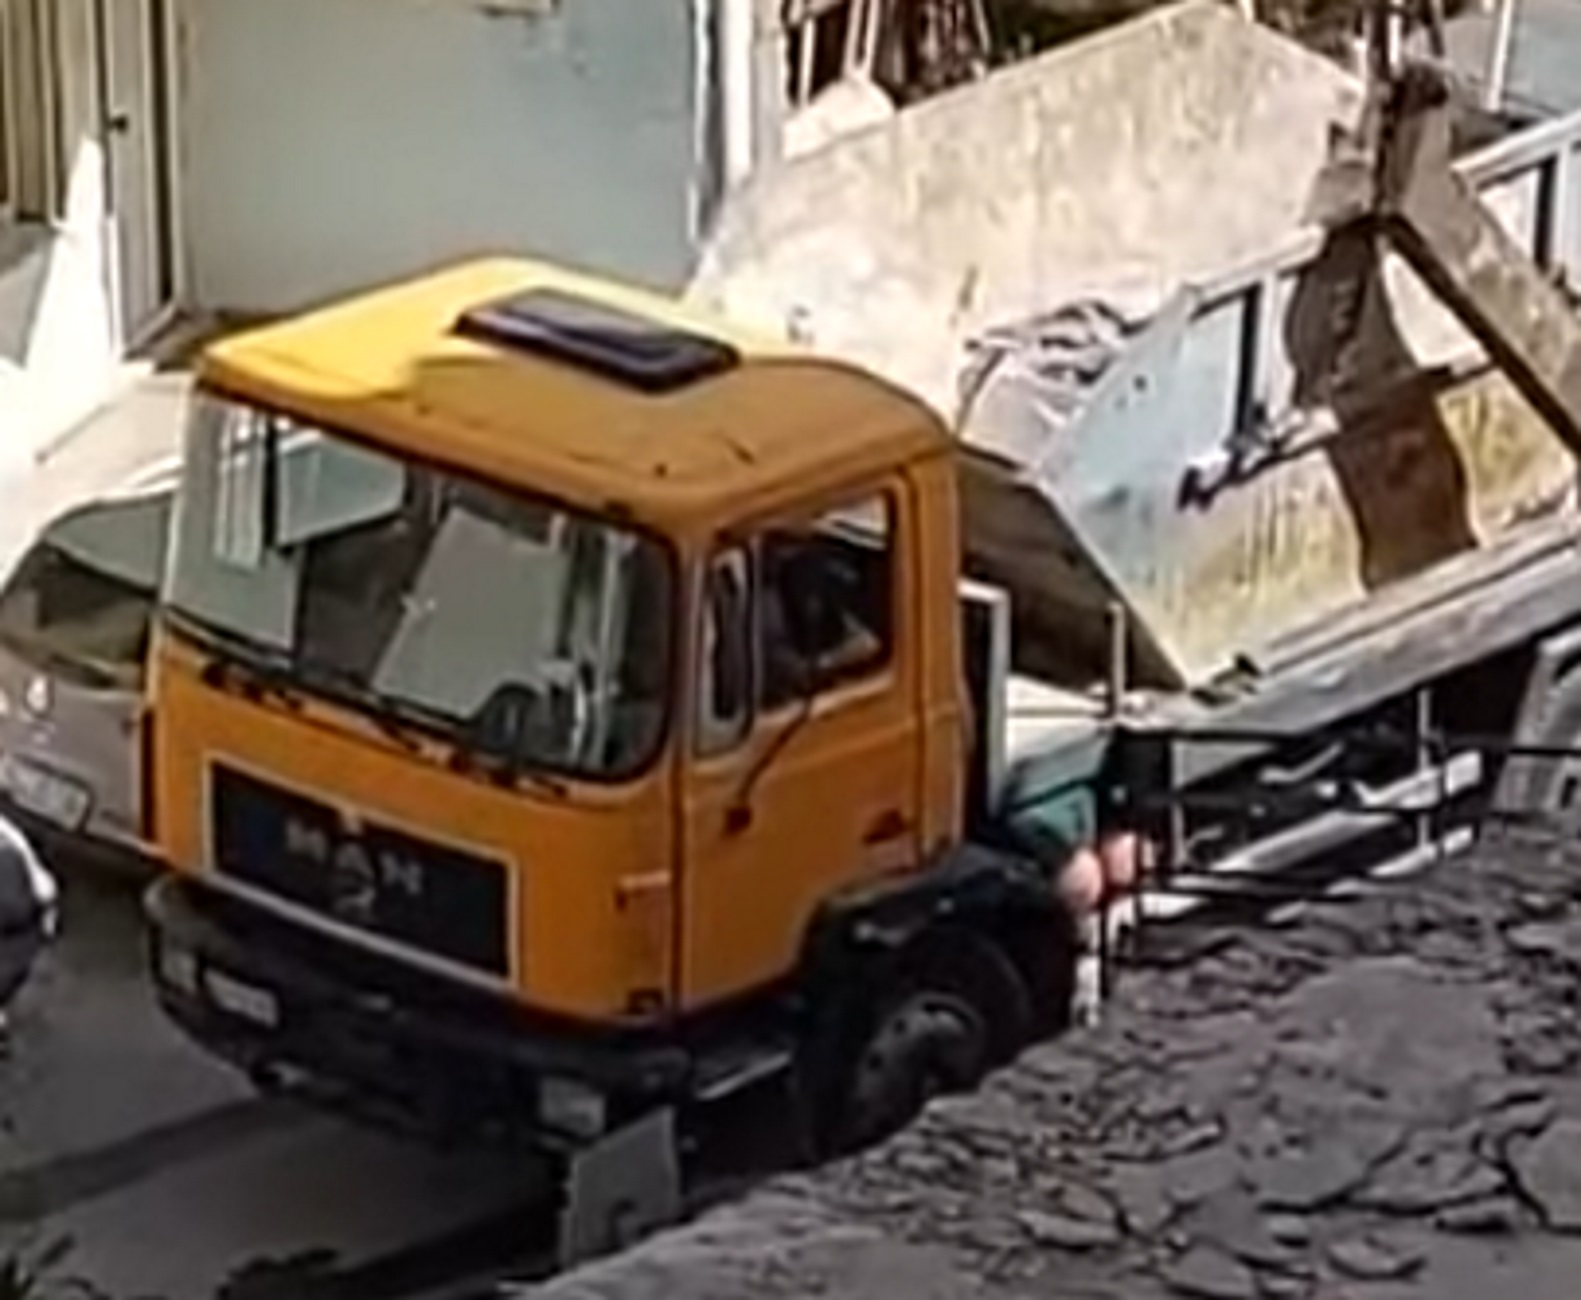 Ηράκλειο: Η στιγμή που παίρνουν με τις πέτρες οδηγό φορτηγού – Η άγρια επίθεση σε στενό της πόλης